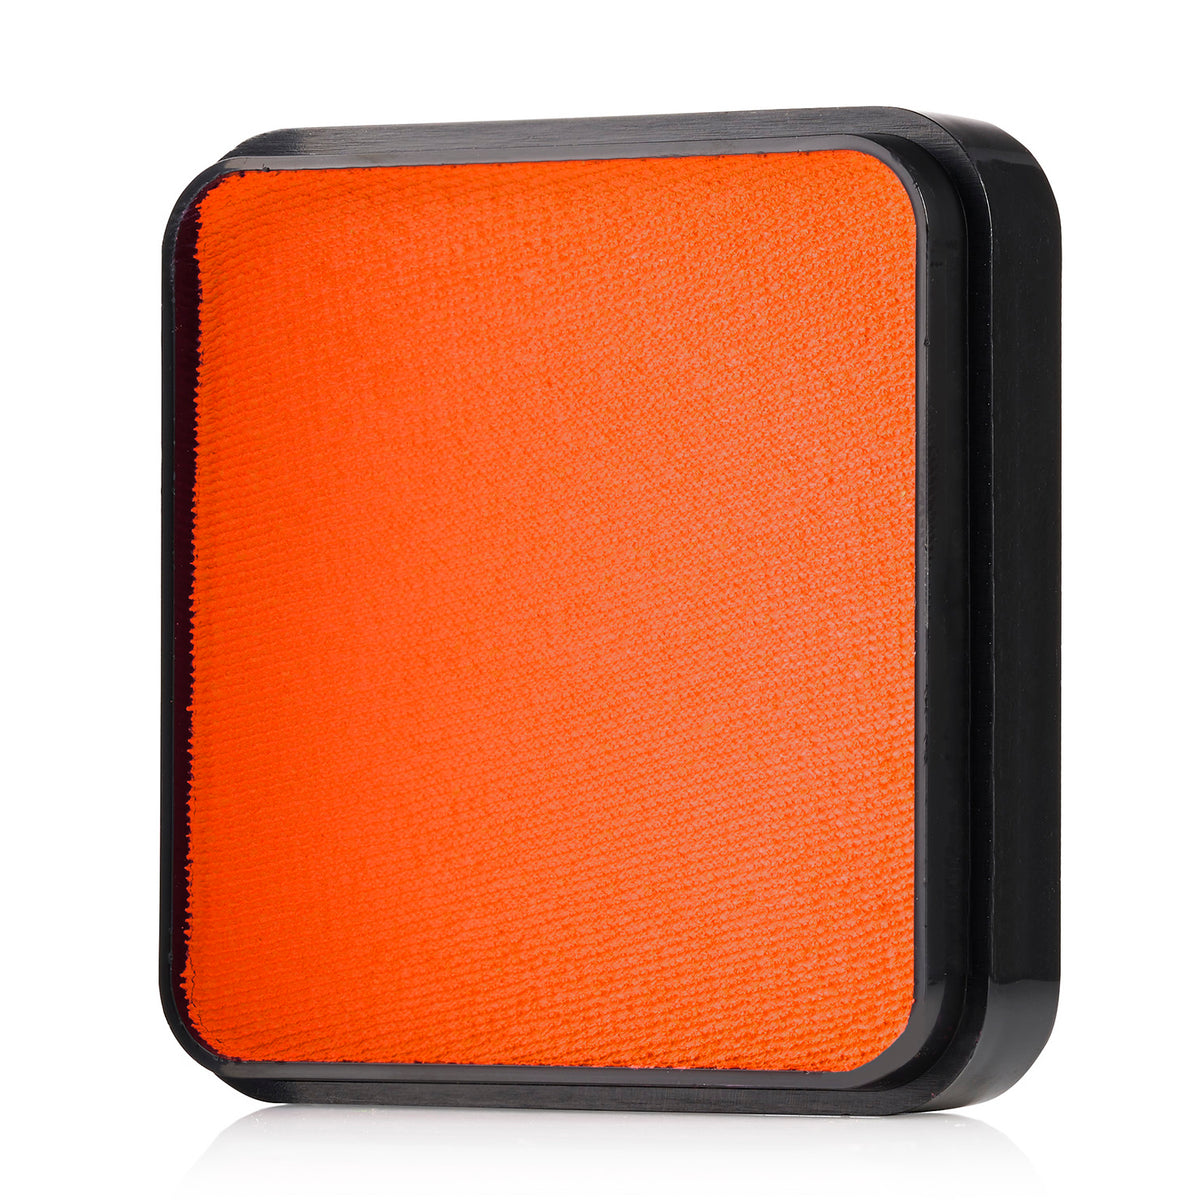 Kraze FX Face Paint - Orange (25 gm)